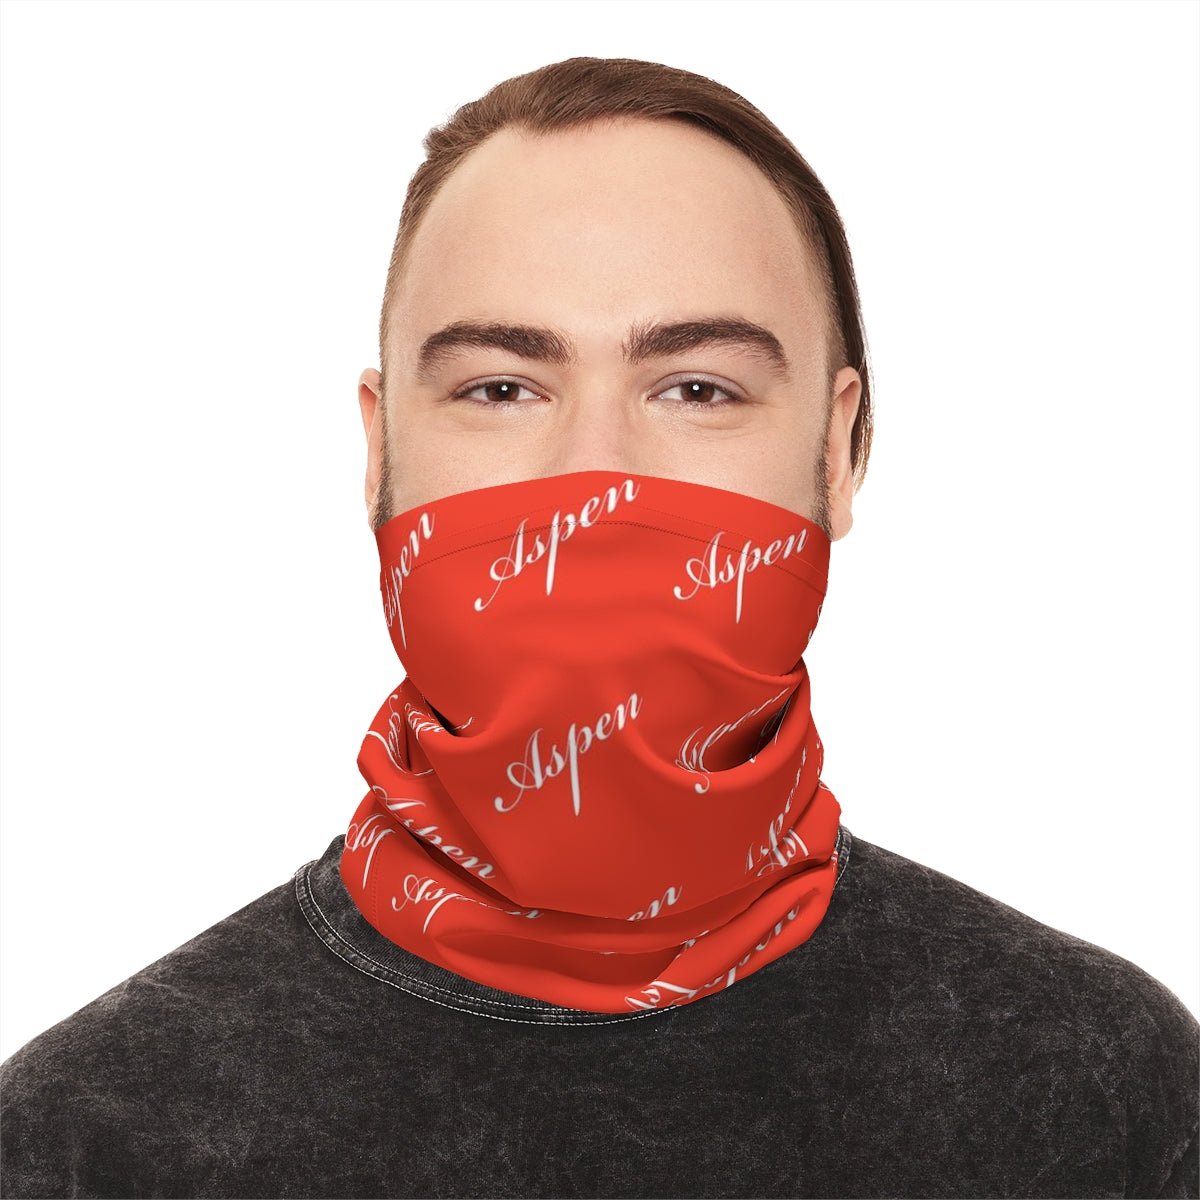 Fashionable Neck Gaiter For Women Girls Men -Multi-Purpose UPF 50+ UV+Full Face Mask Buff Balaclava Red Aspen - Studio40ParkLane